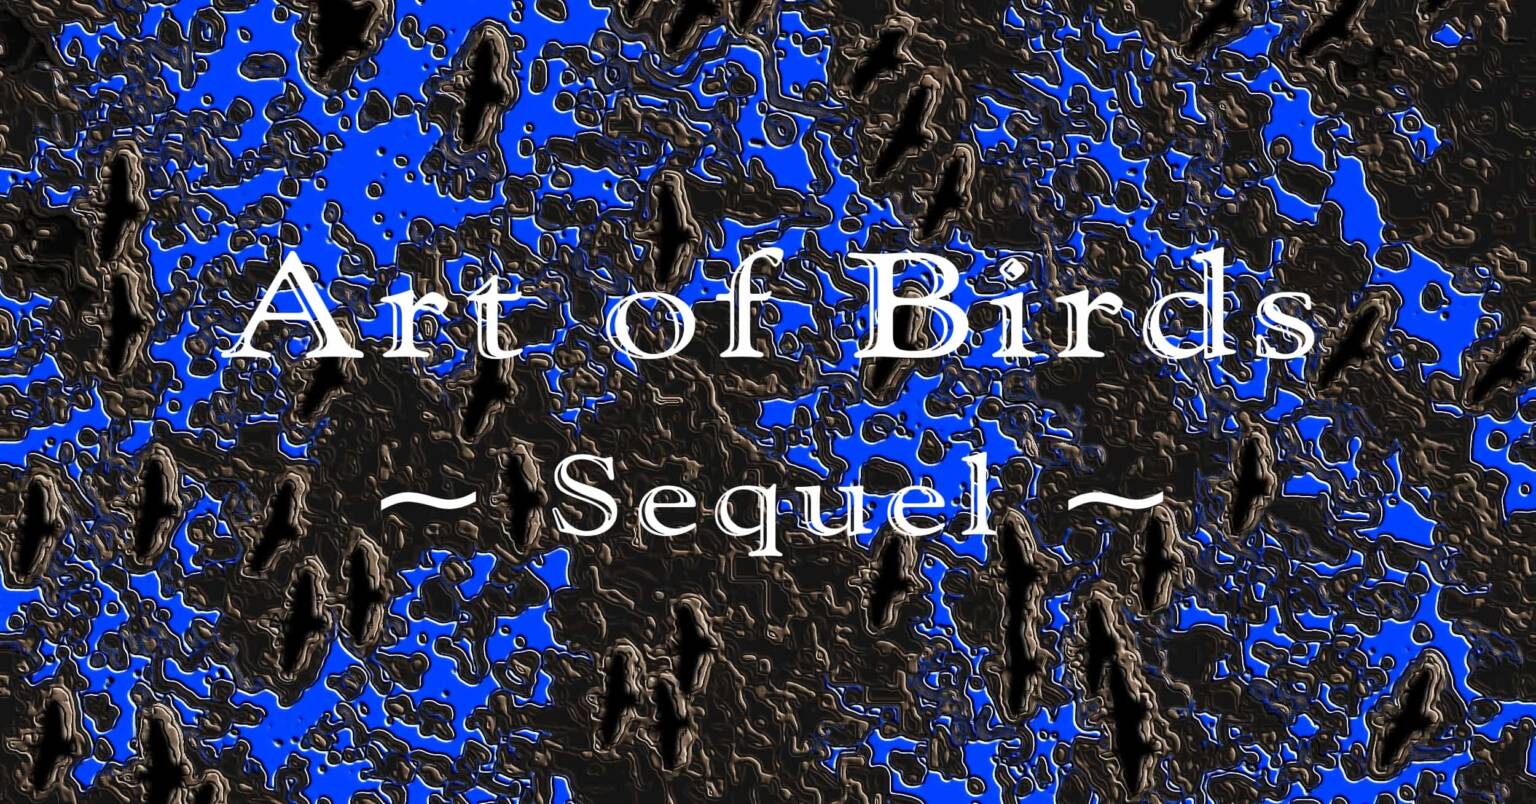 Art of Birds